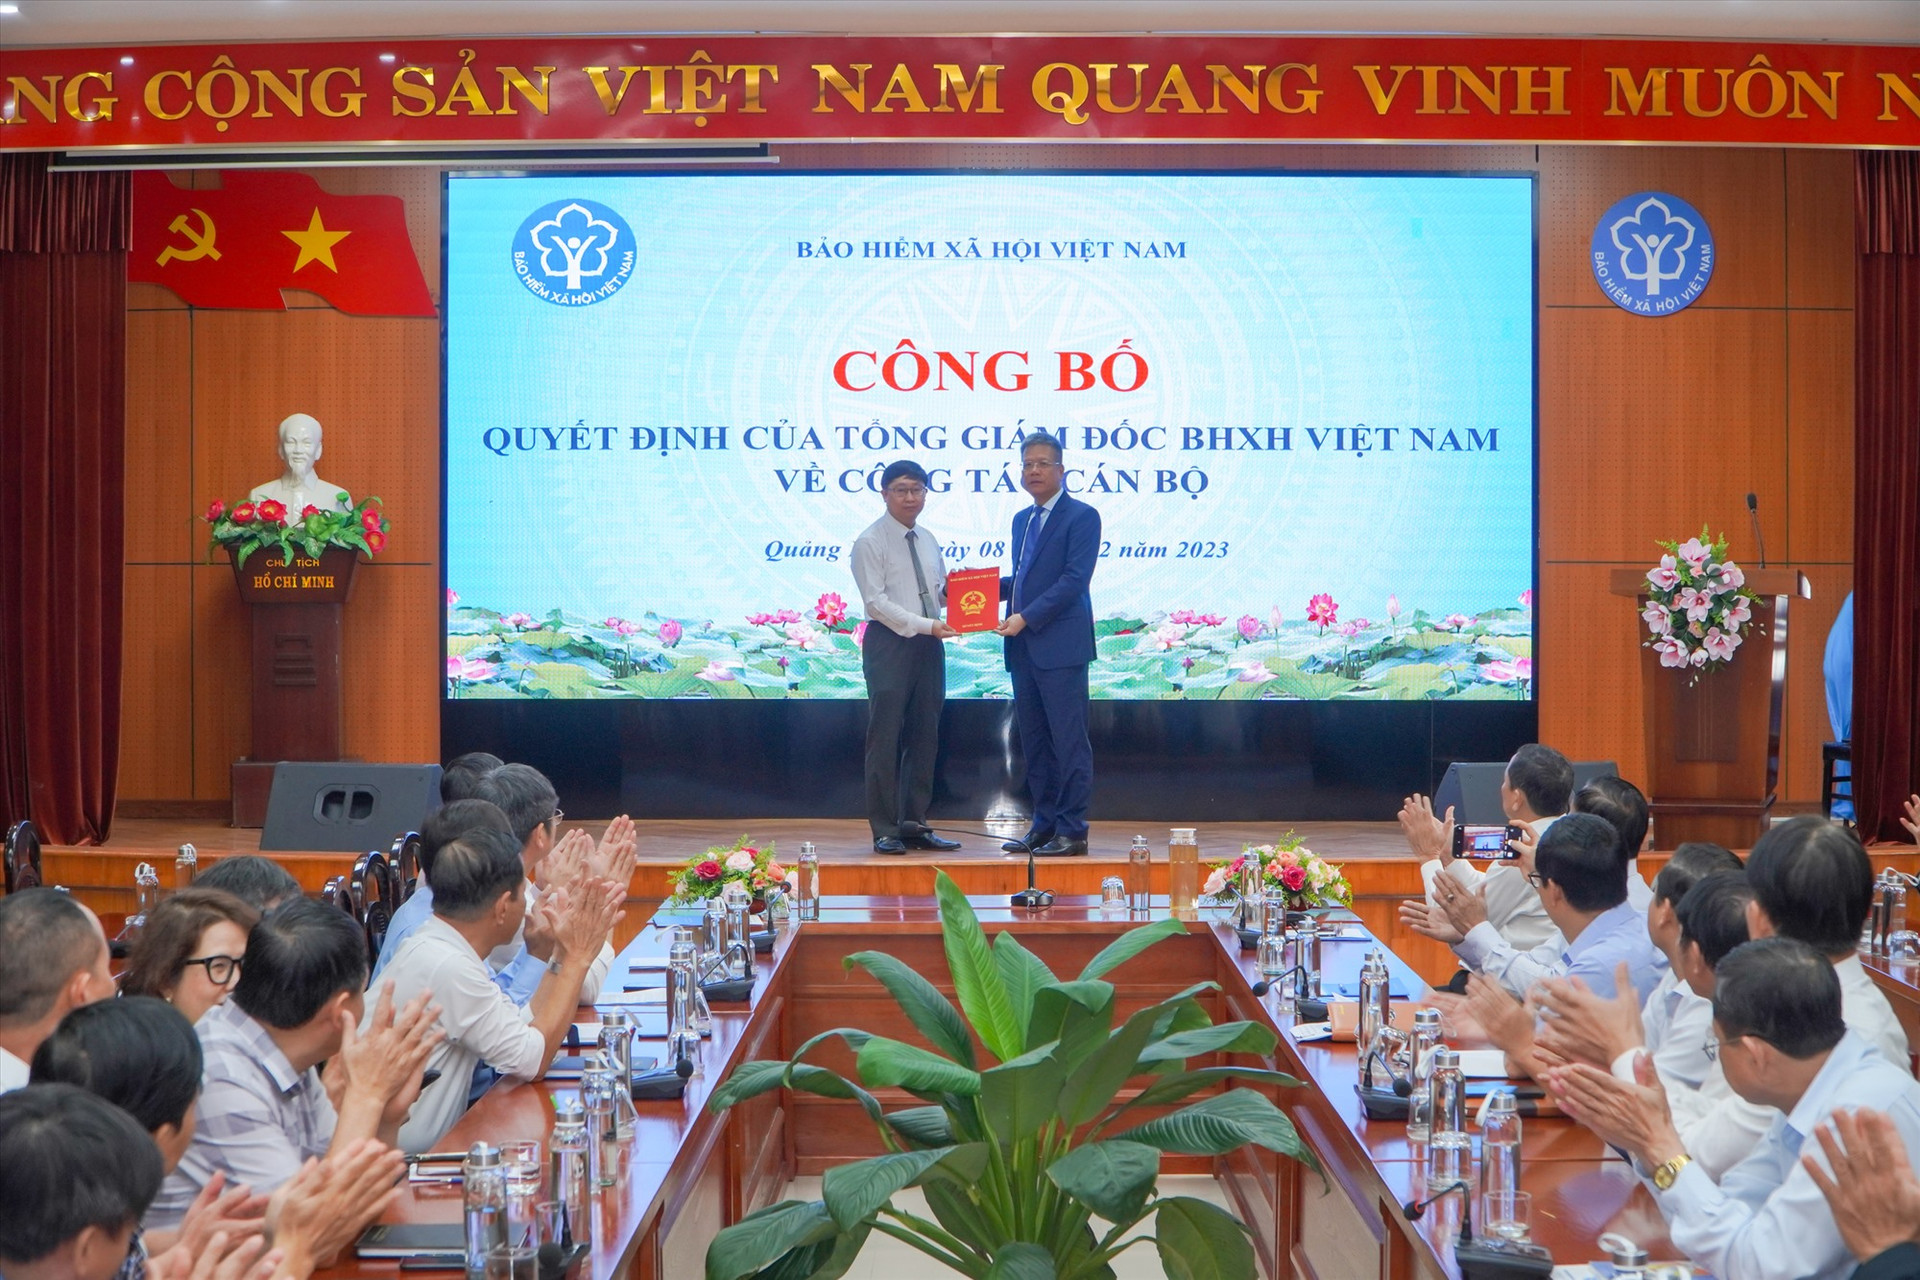 Phó Tổng Giám đốc BHXH Việt Nam Trần Đình Liệu trao Quyết định bổ nhiệm cho ông Văn Phú Quân. Ảnh: D.L